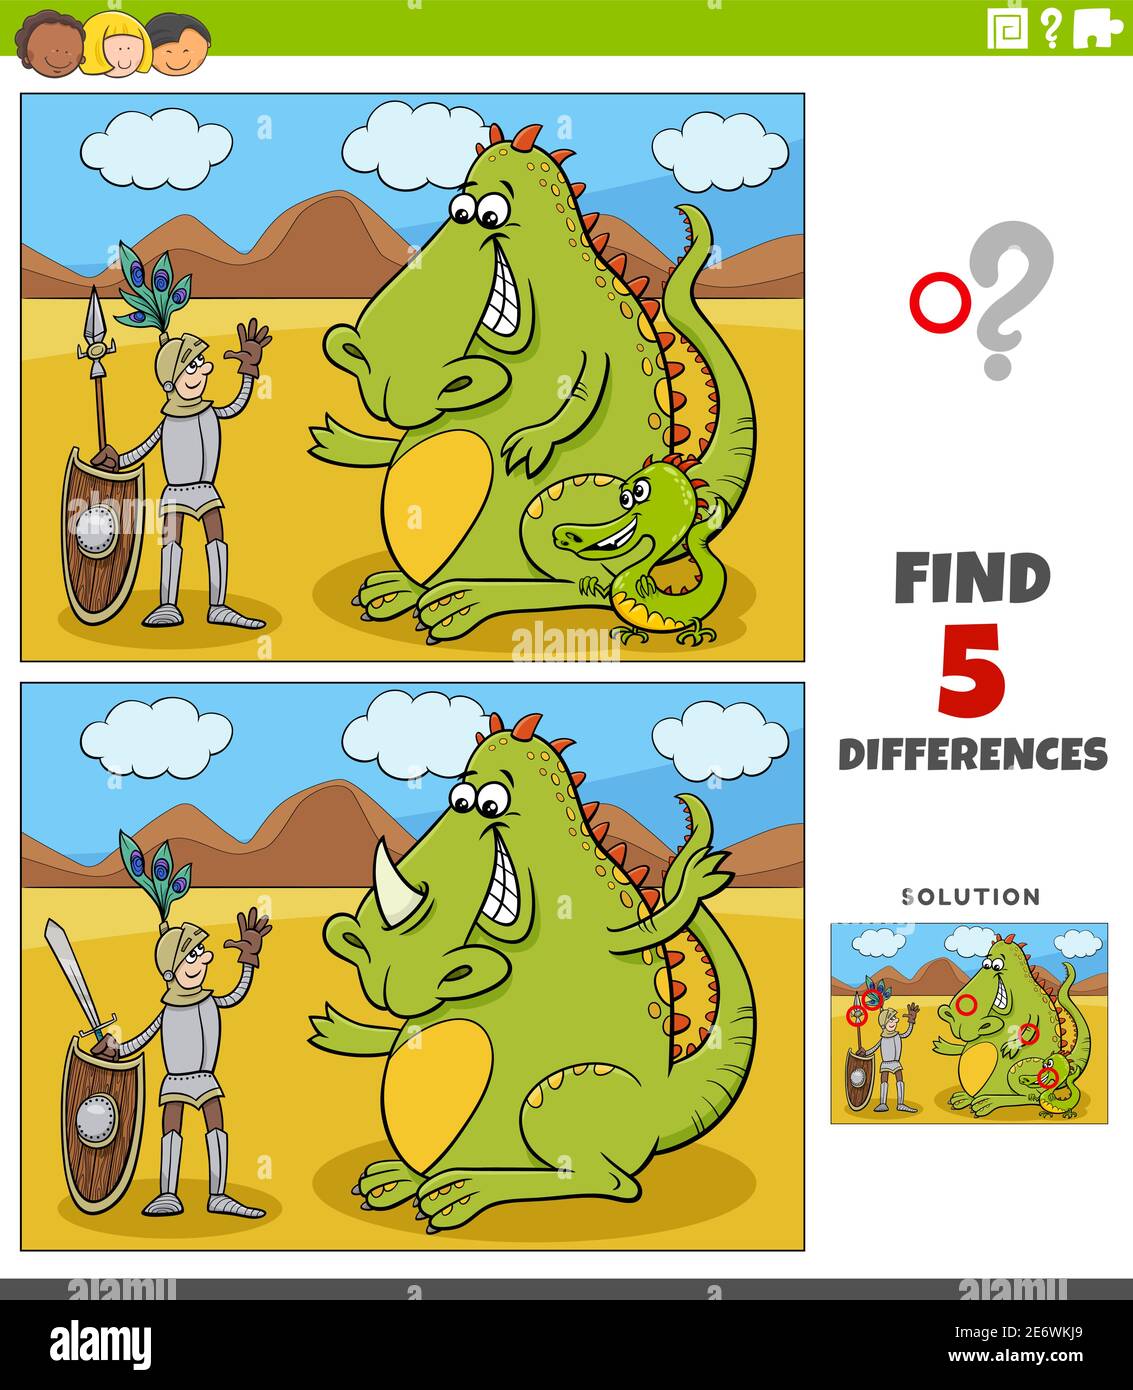 Illustration de dessin animé de trouver les différences entre les images jeu éducatif avec des personnages de chevalier et de dragon Illustration de Vecteur